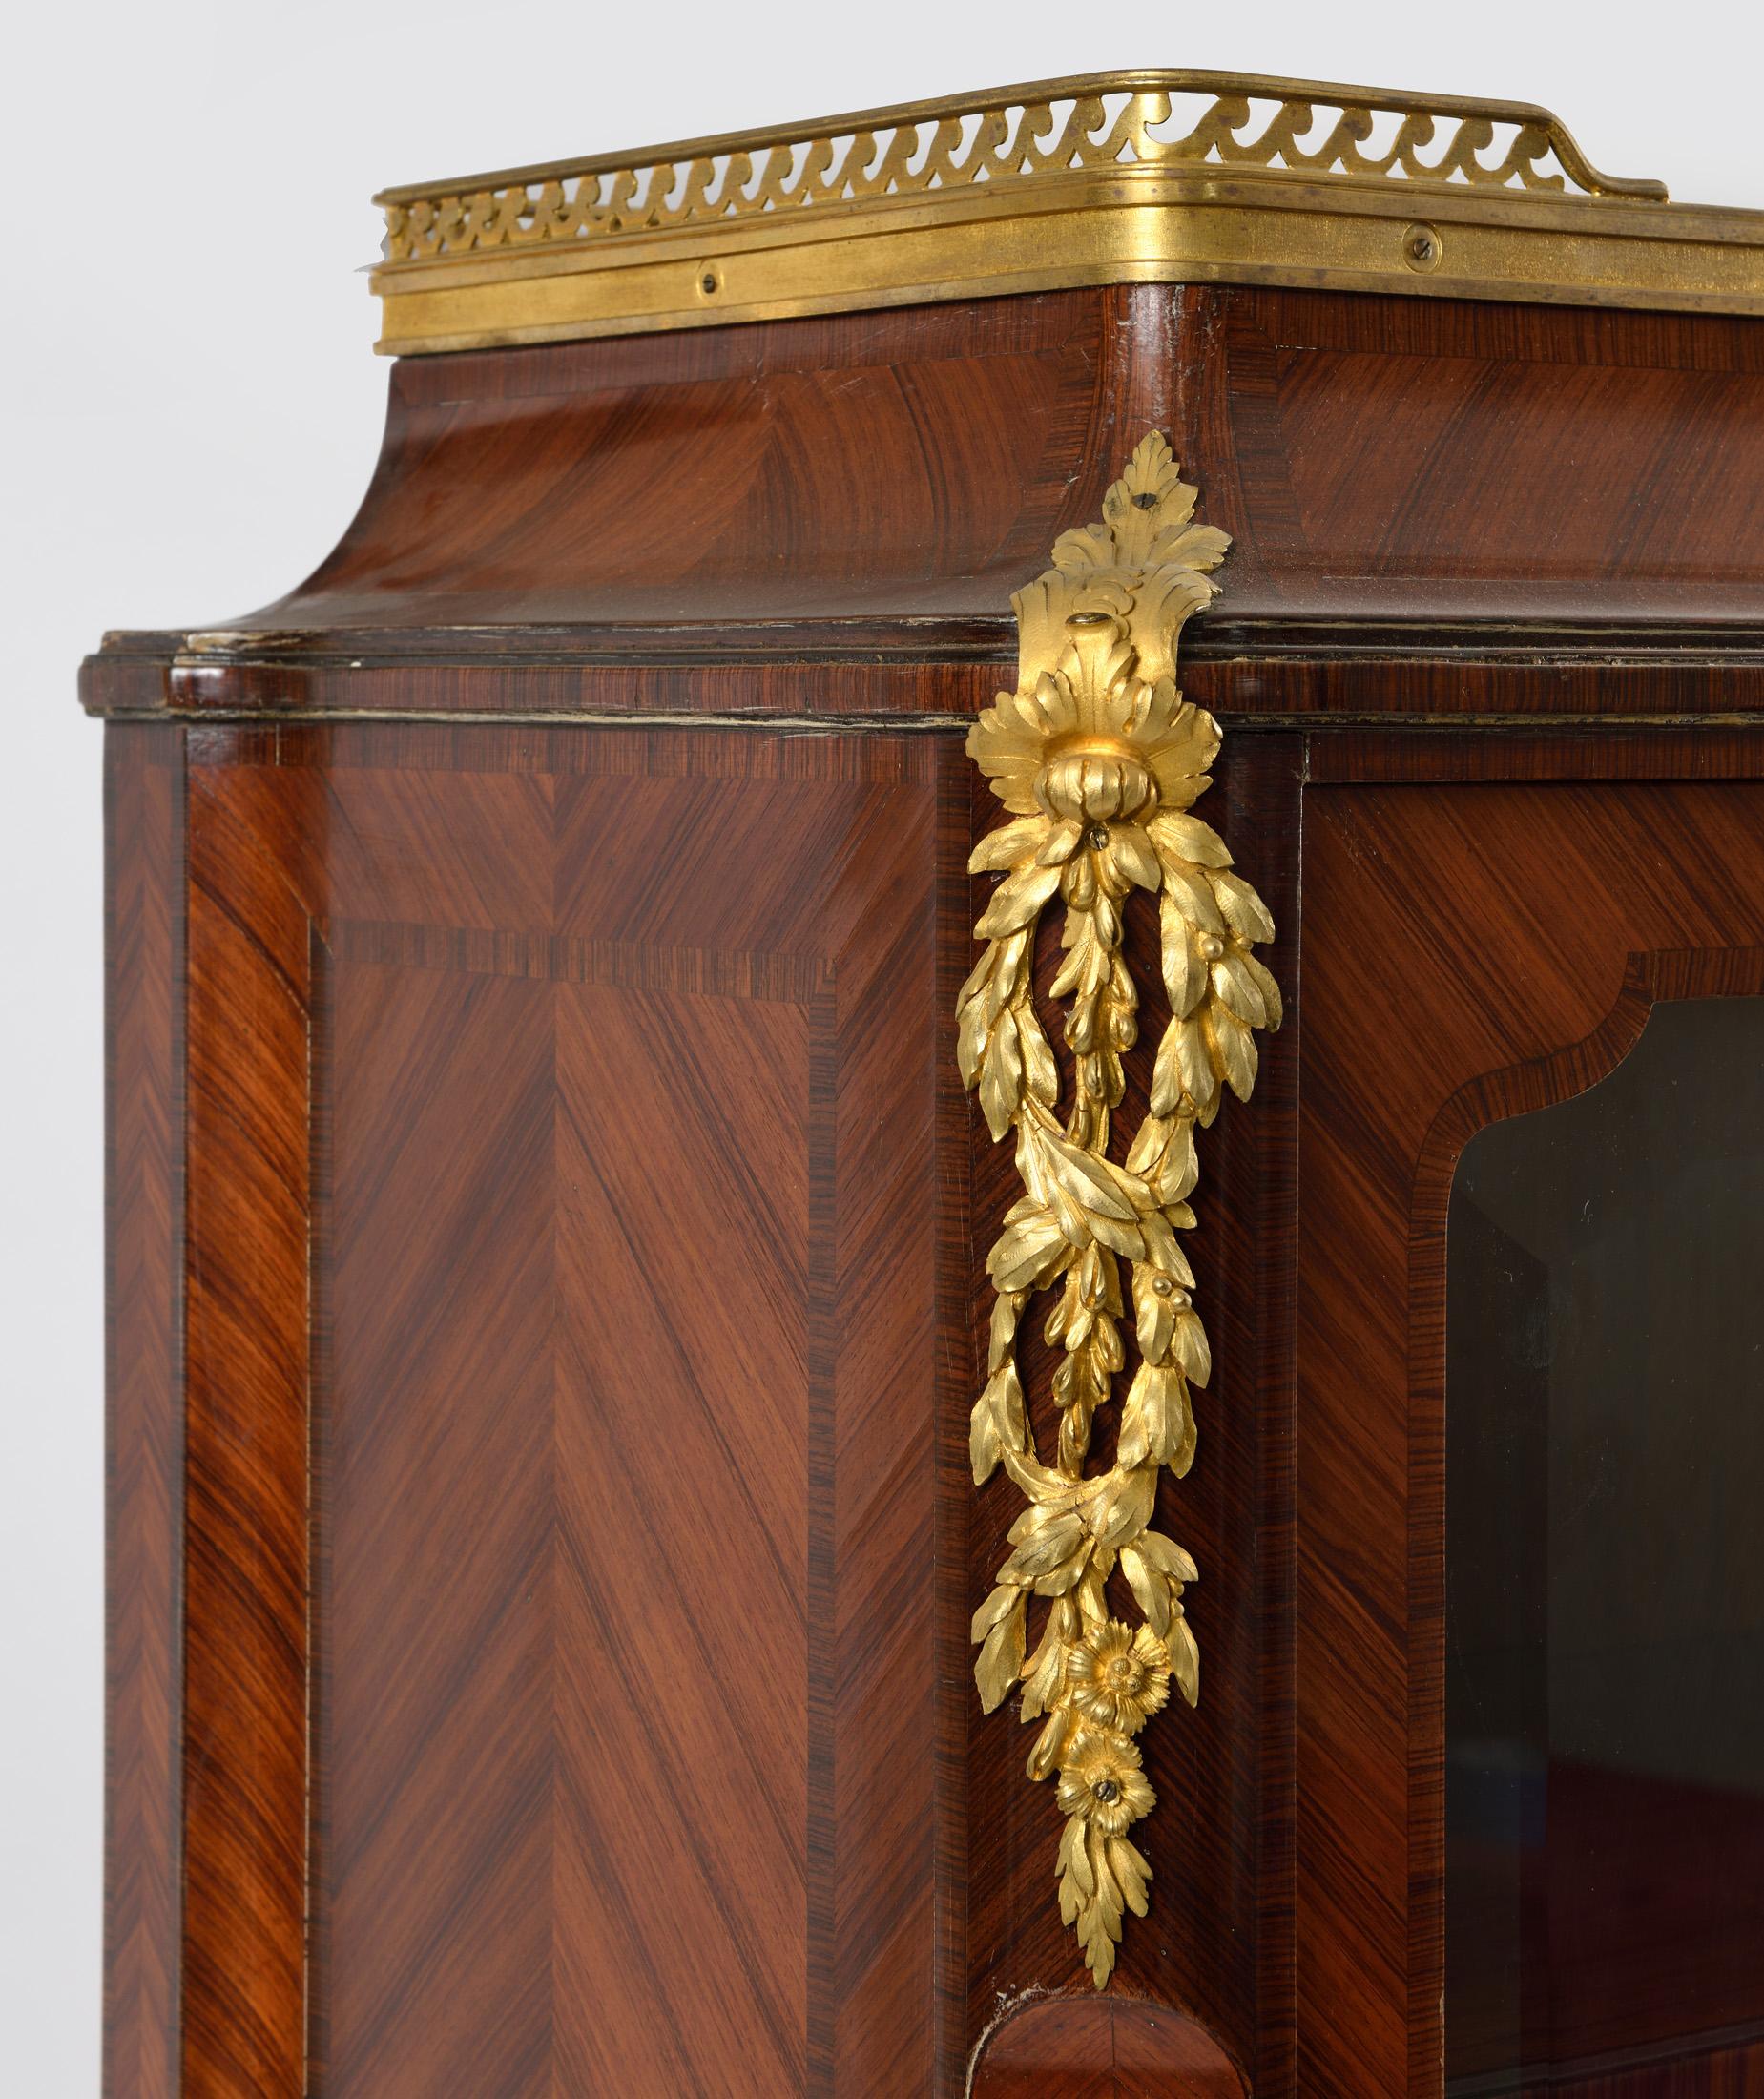 Superbe mobilier en marqueterie et bronze dans le style de transition louis XV louis XVI
exécuté par A.Chevrie, célèbre ébéniste parisien de l'époque.
Le meuble du haut s'ouvre par deux portes vitrées, à l'intérieur deux gaines pour exposer des